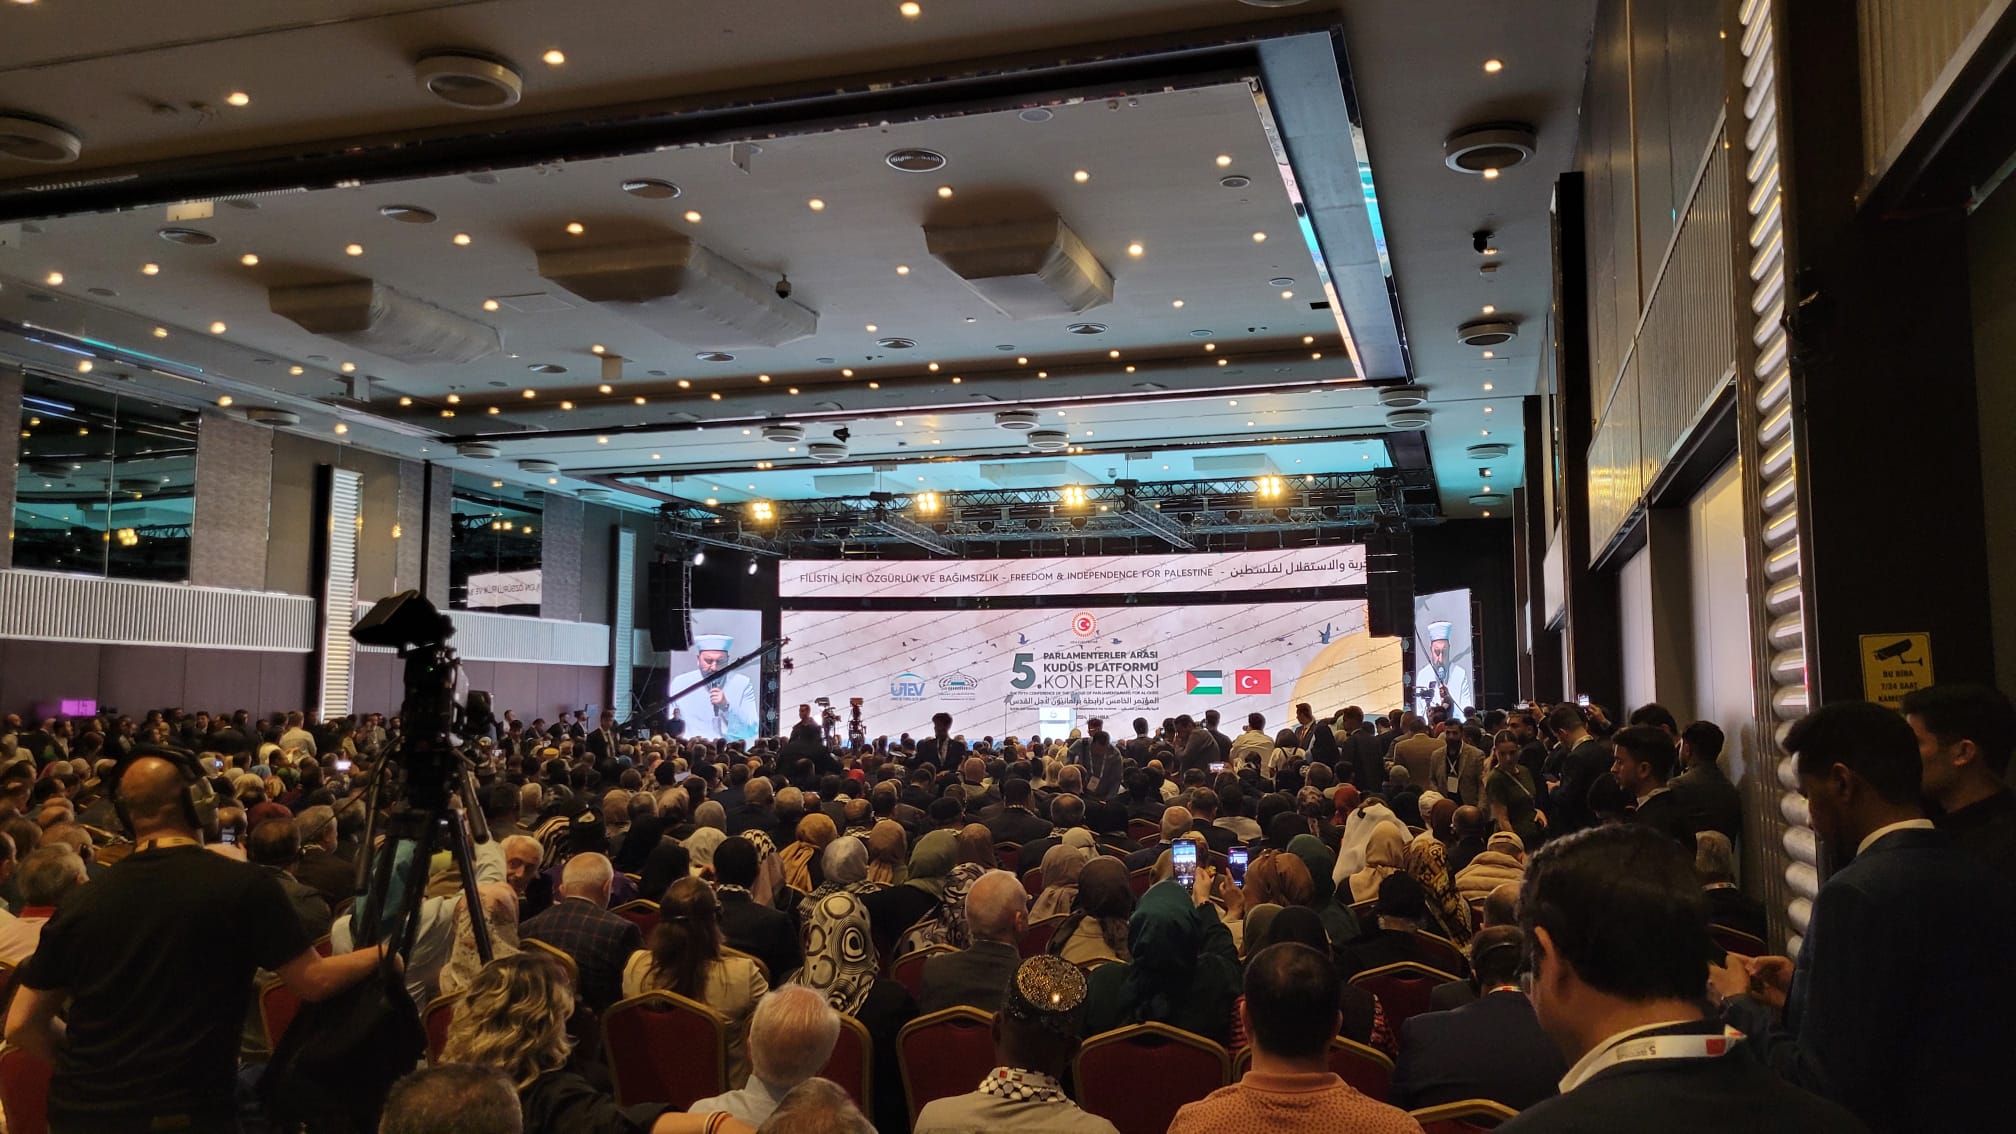 Parlamenterler Arası Kudüs Platformu, İstanbul'da beşinci uluslararası parlamento konferansının faaliyetlerini başlattı